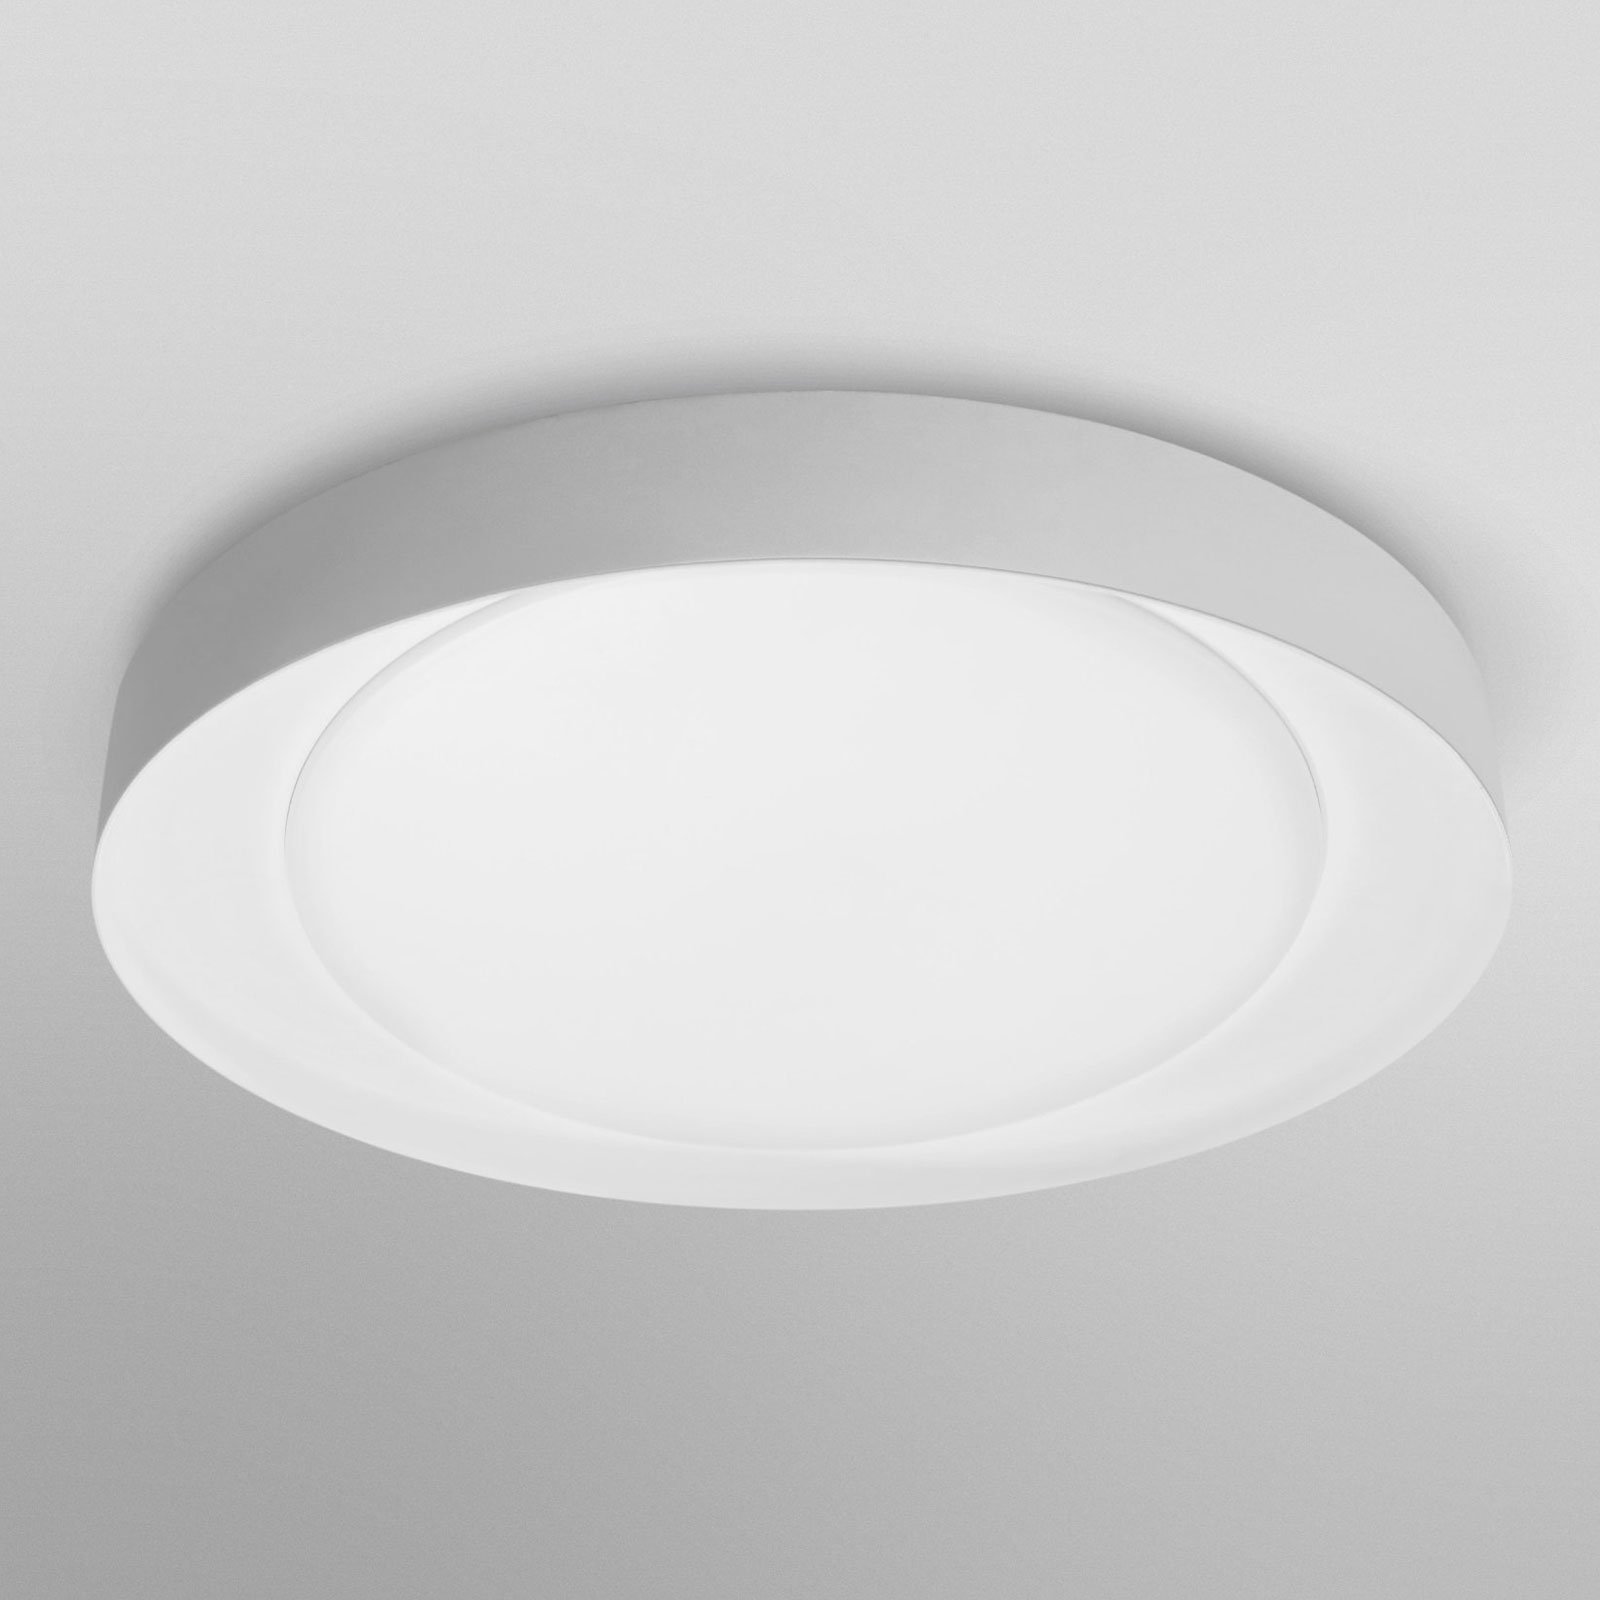 LEDVANCE SMART+ WiFi Orbis Eye CCT 49cm grau